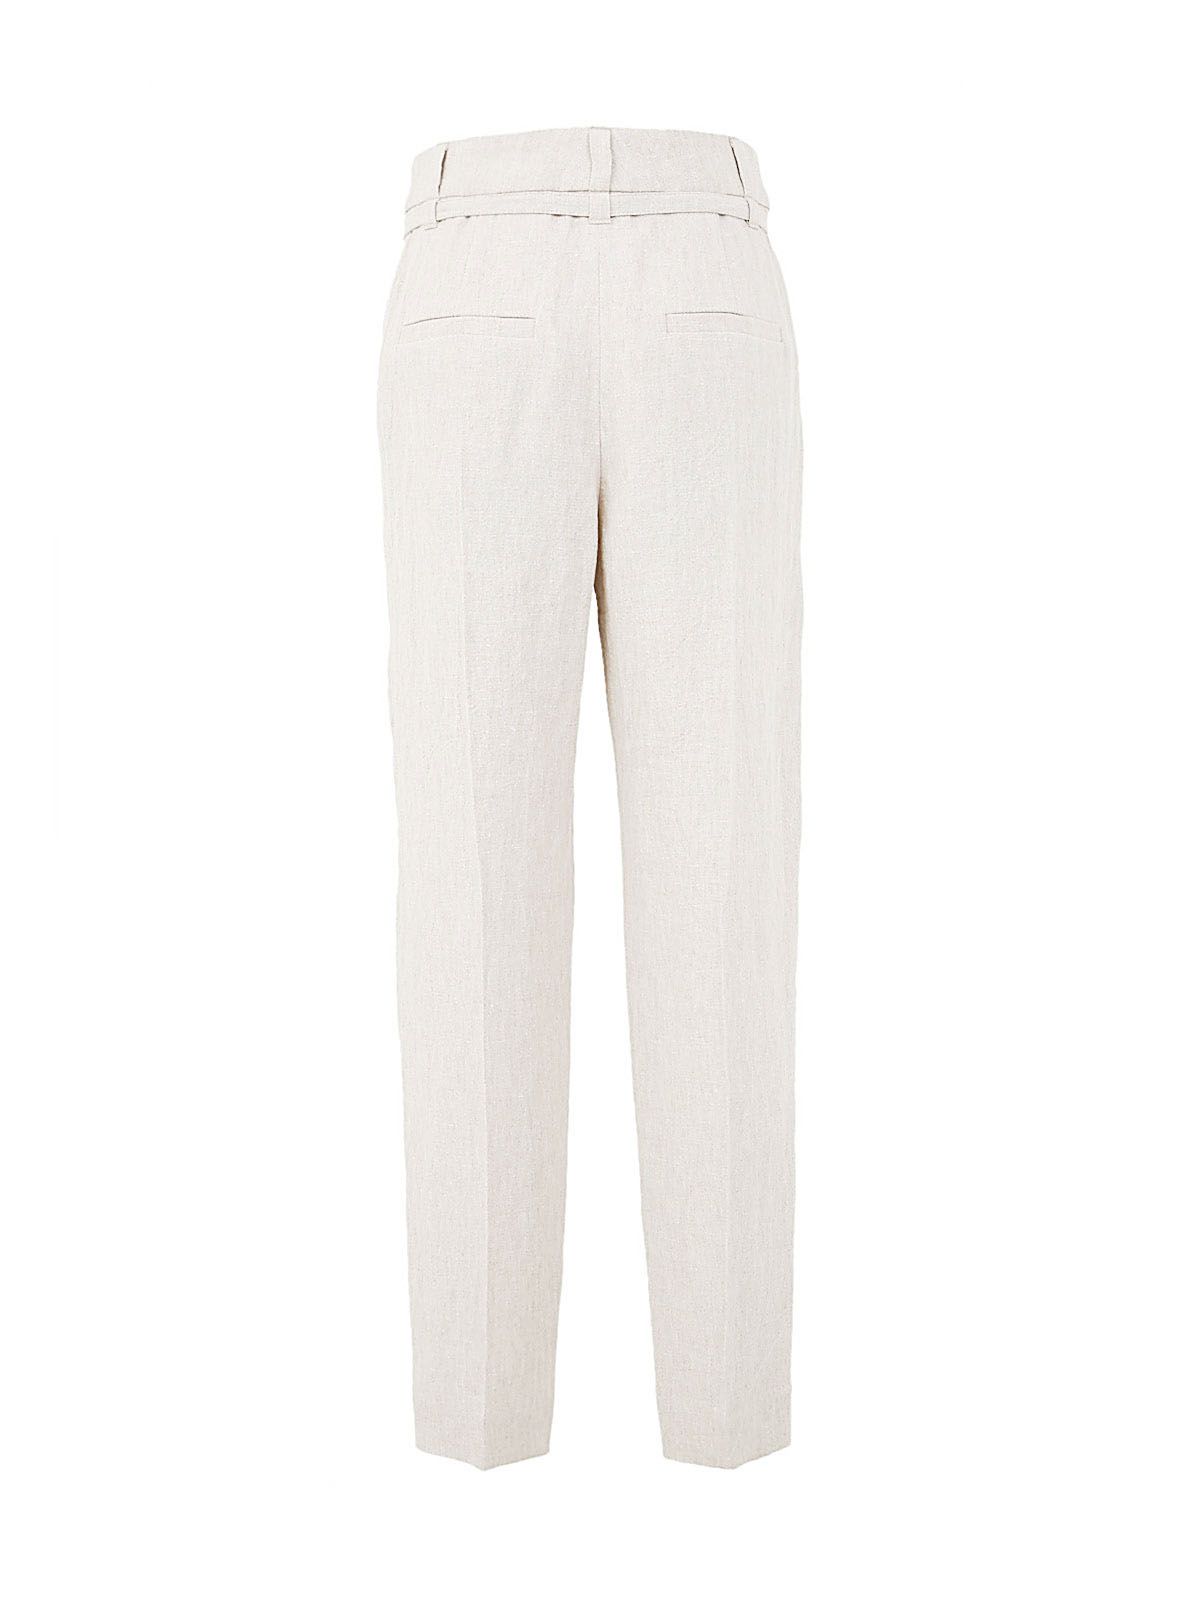 Shop Brunello Cucinelli Women's Linen Straight Pants